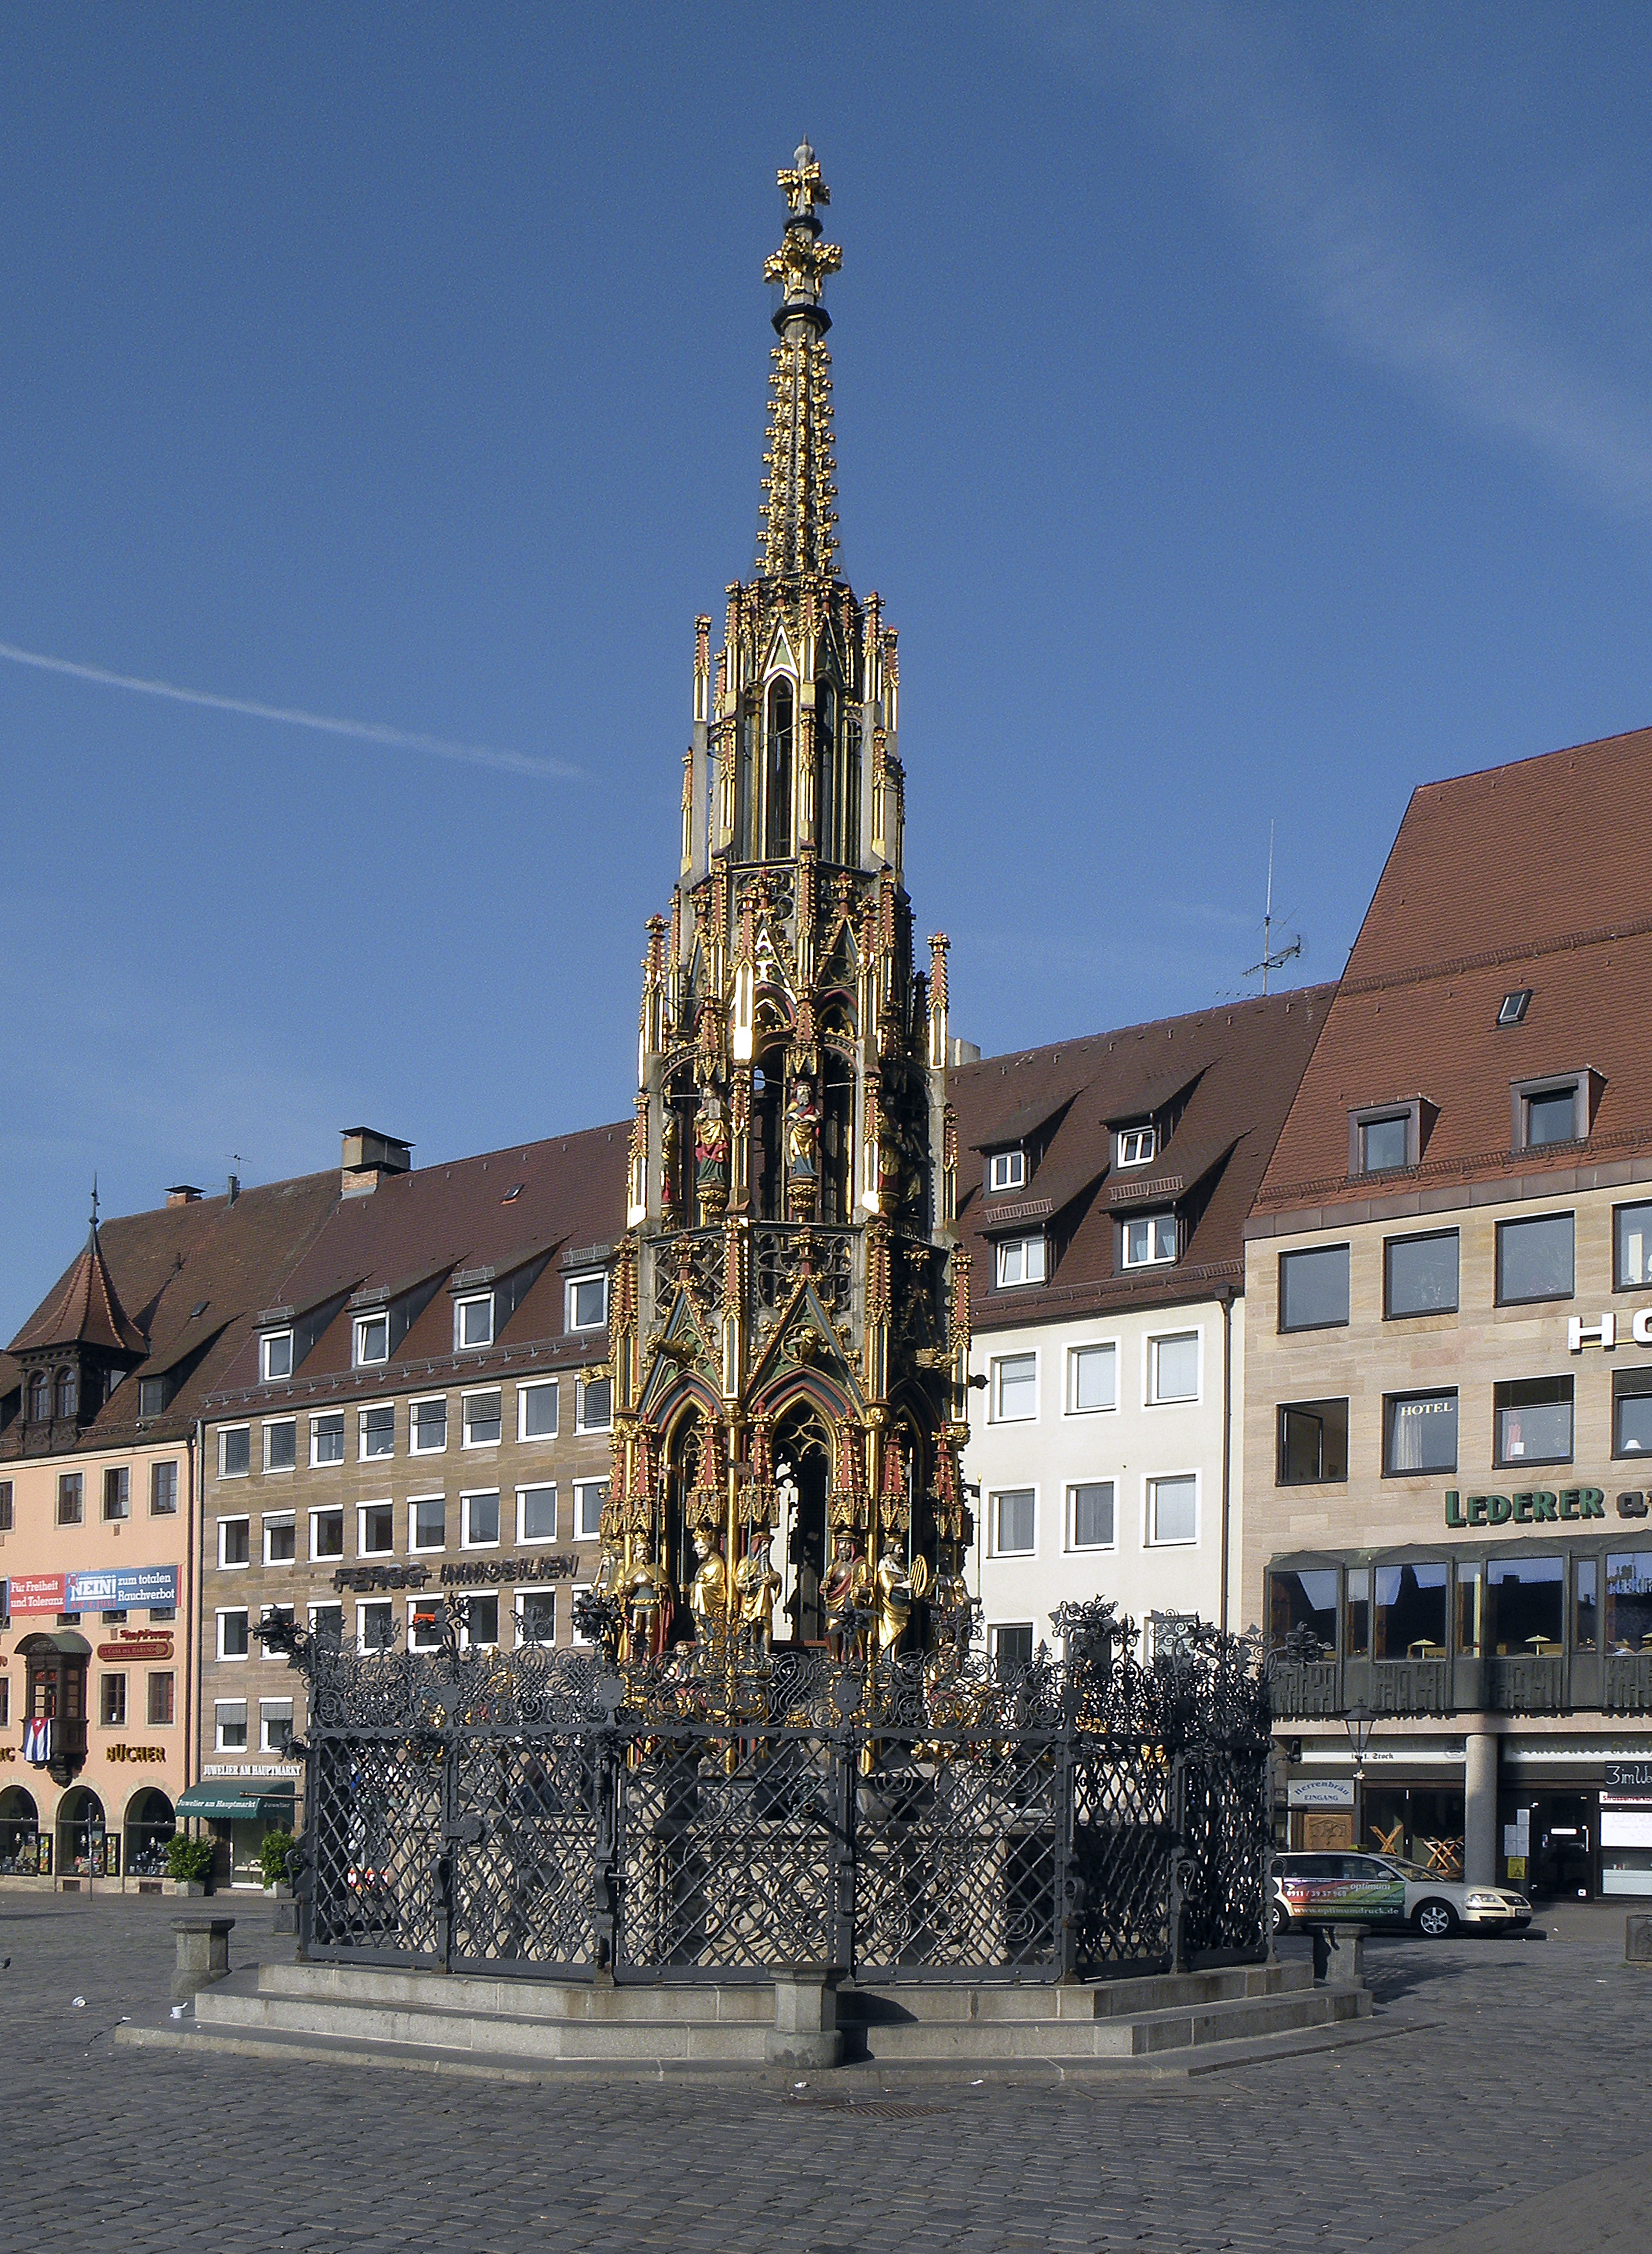 File:Tne Schonen Brunnen on the Hauptmarkt in Nuremberg.jpg ...